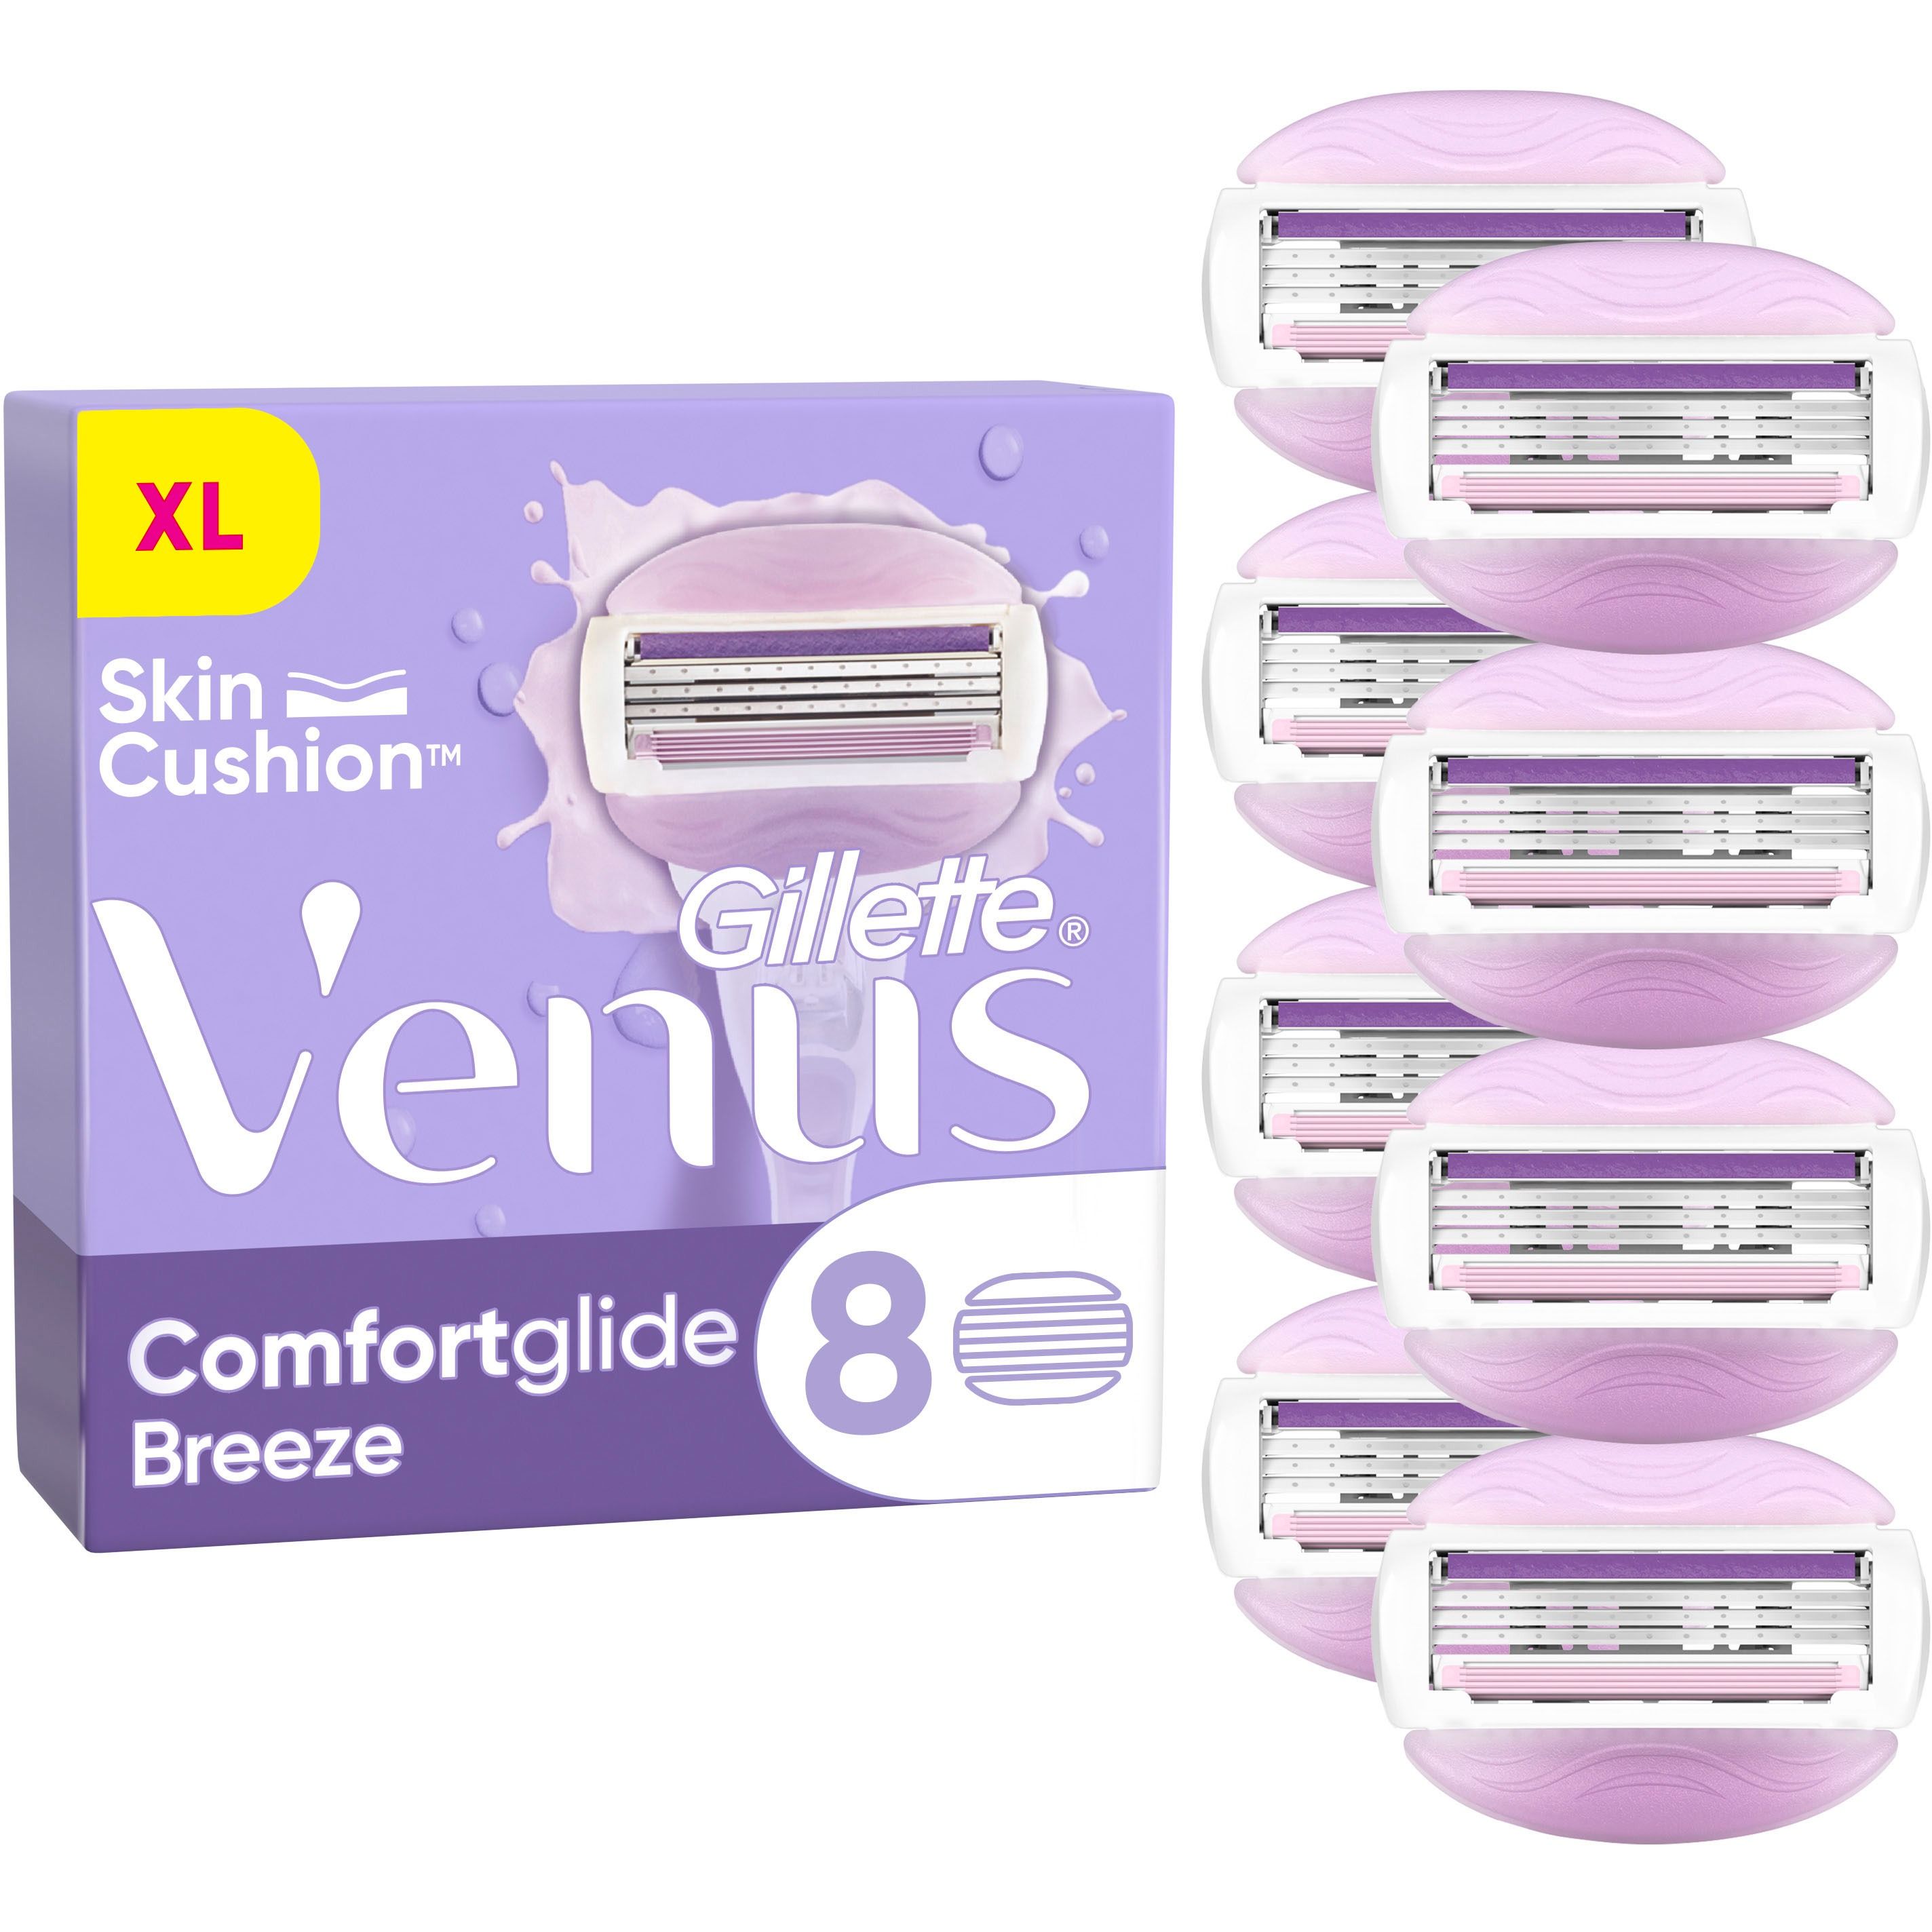 Змінні касети для гоління Venus Comfort Glide Breeze 8 шт. - фото 2